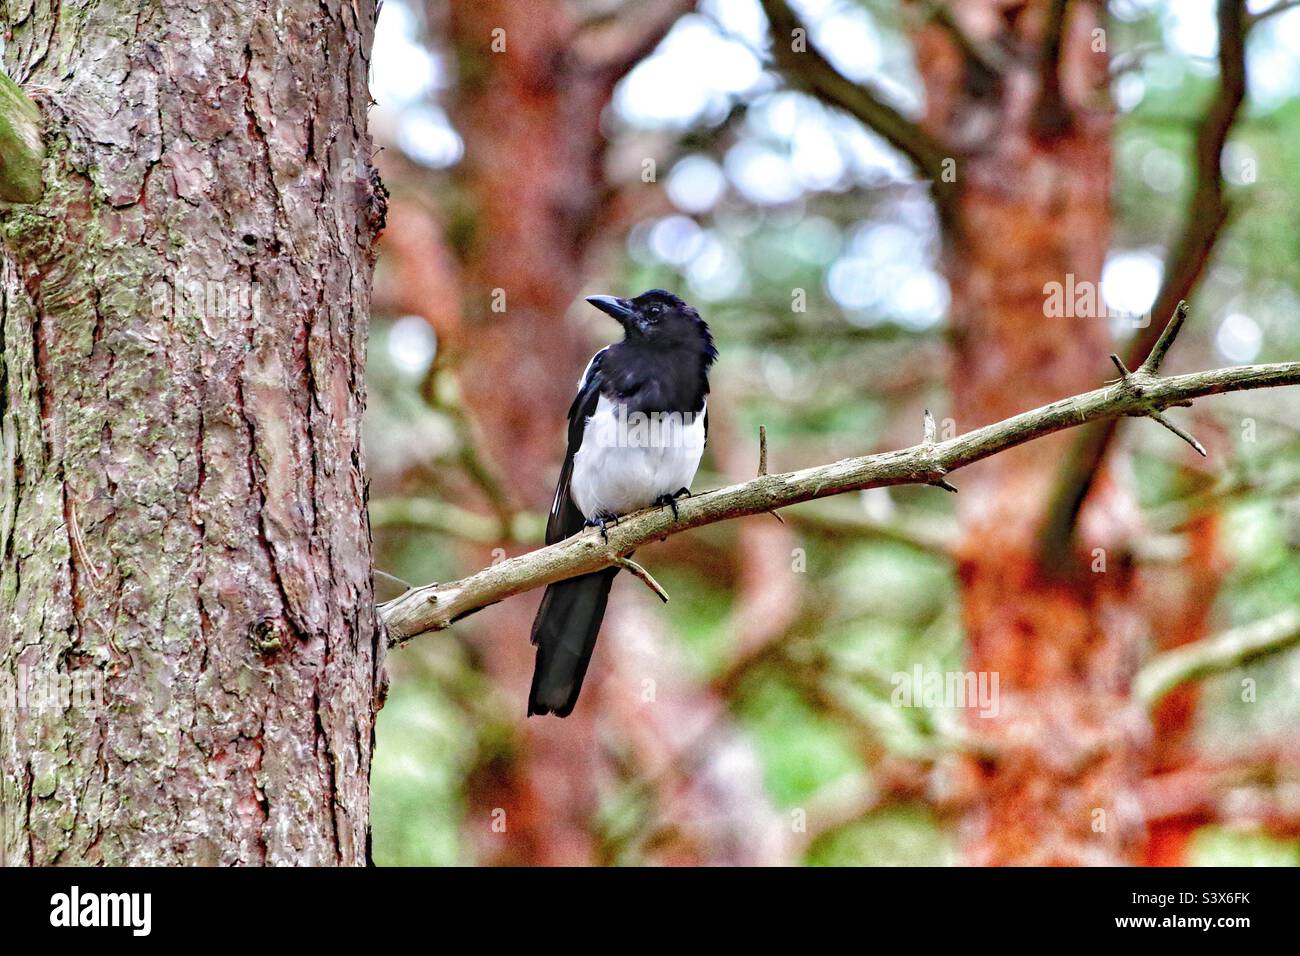 Eine einsame Elster, die auf einem Ast im Wald sitzt. Diese einzigartigen schwarzen und weißen Vögel sind für manche immer noch abergläubisch, die Zahlen repräsentieren etwas anderes. Stockfoto